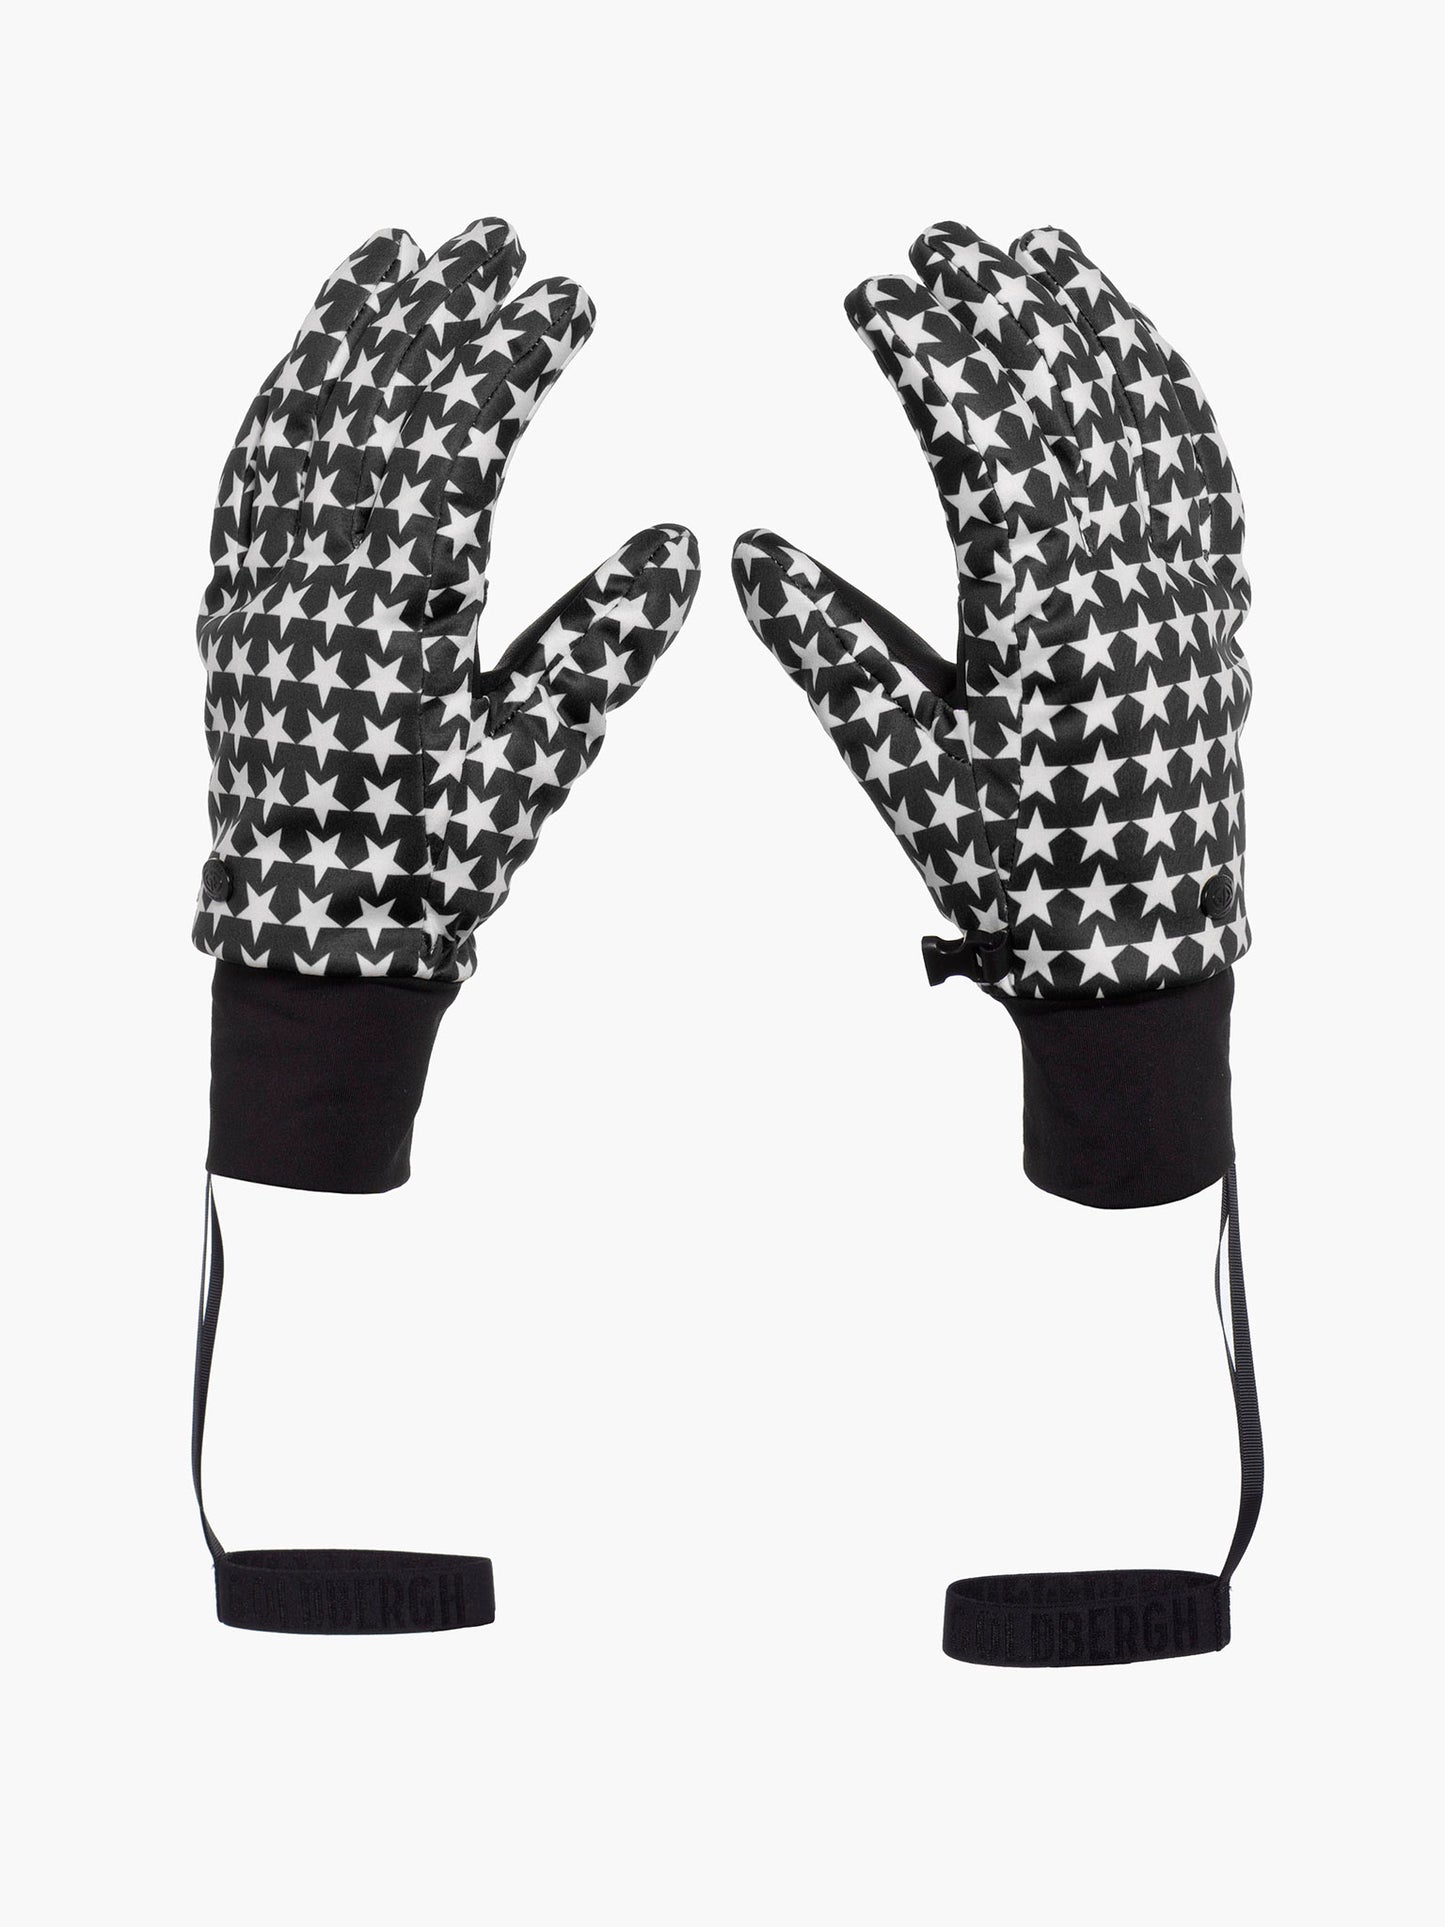 POLARIS gloves